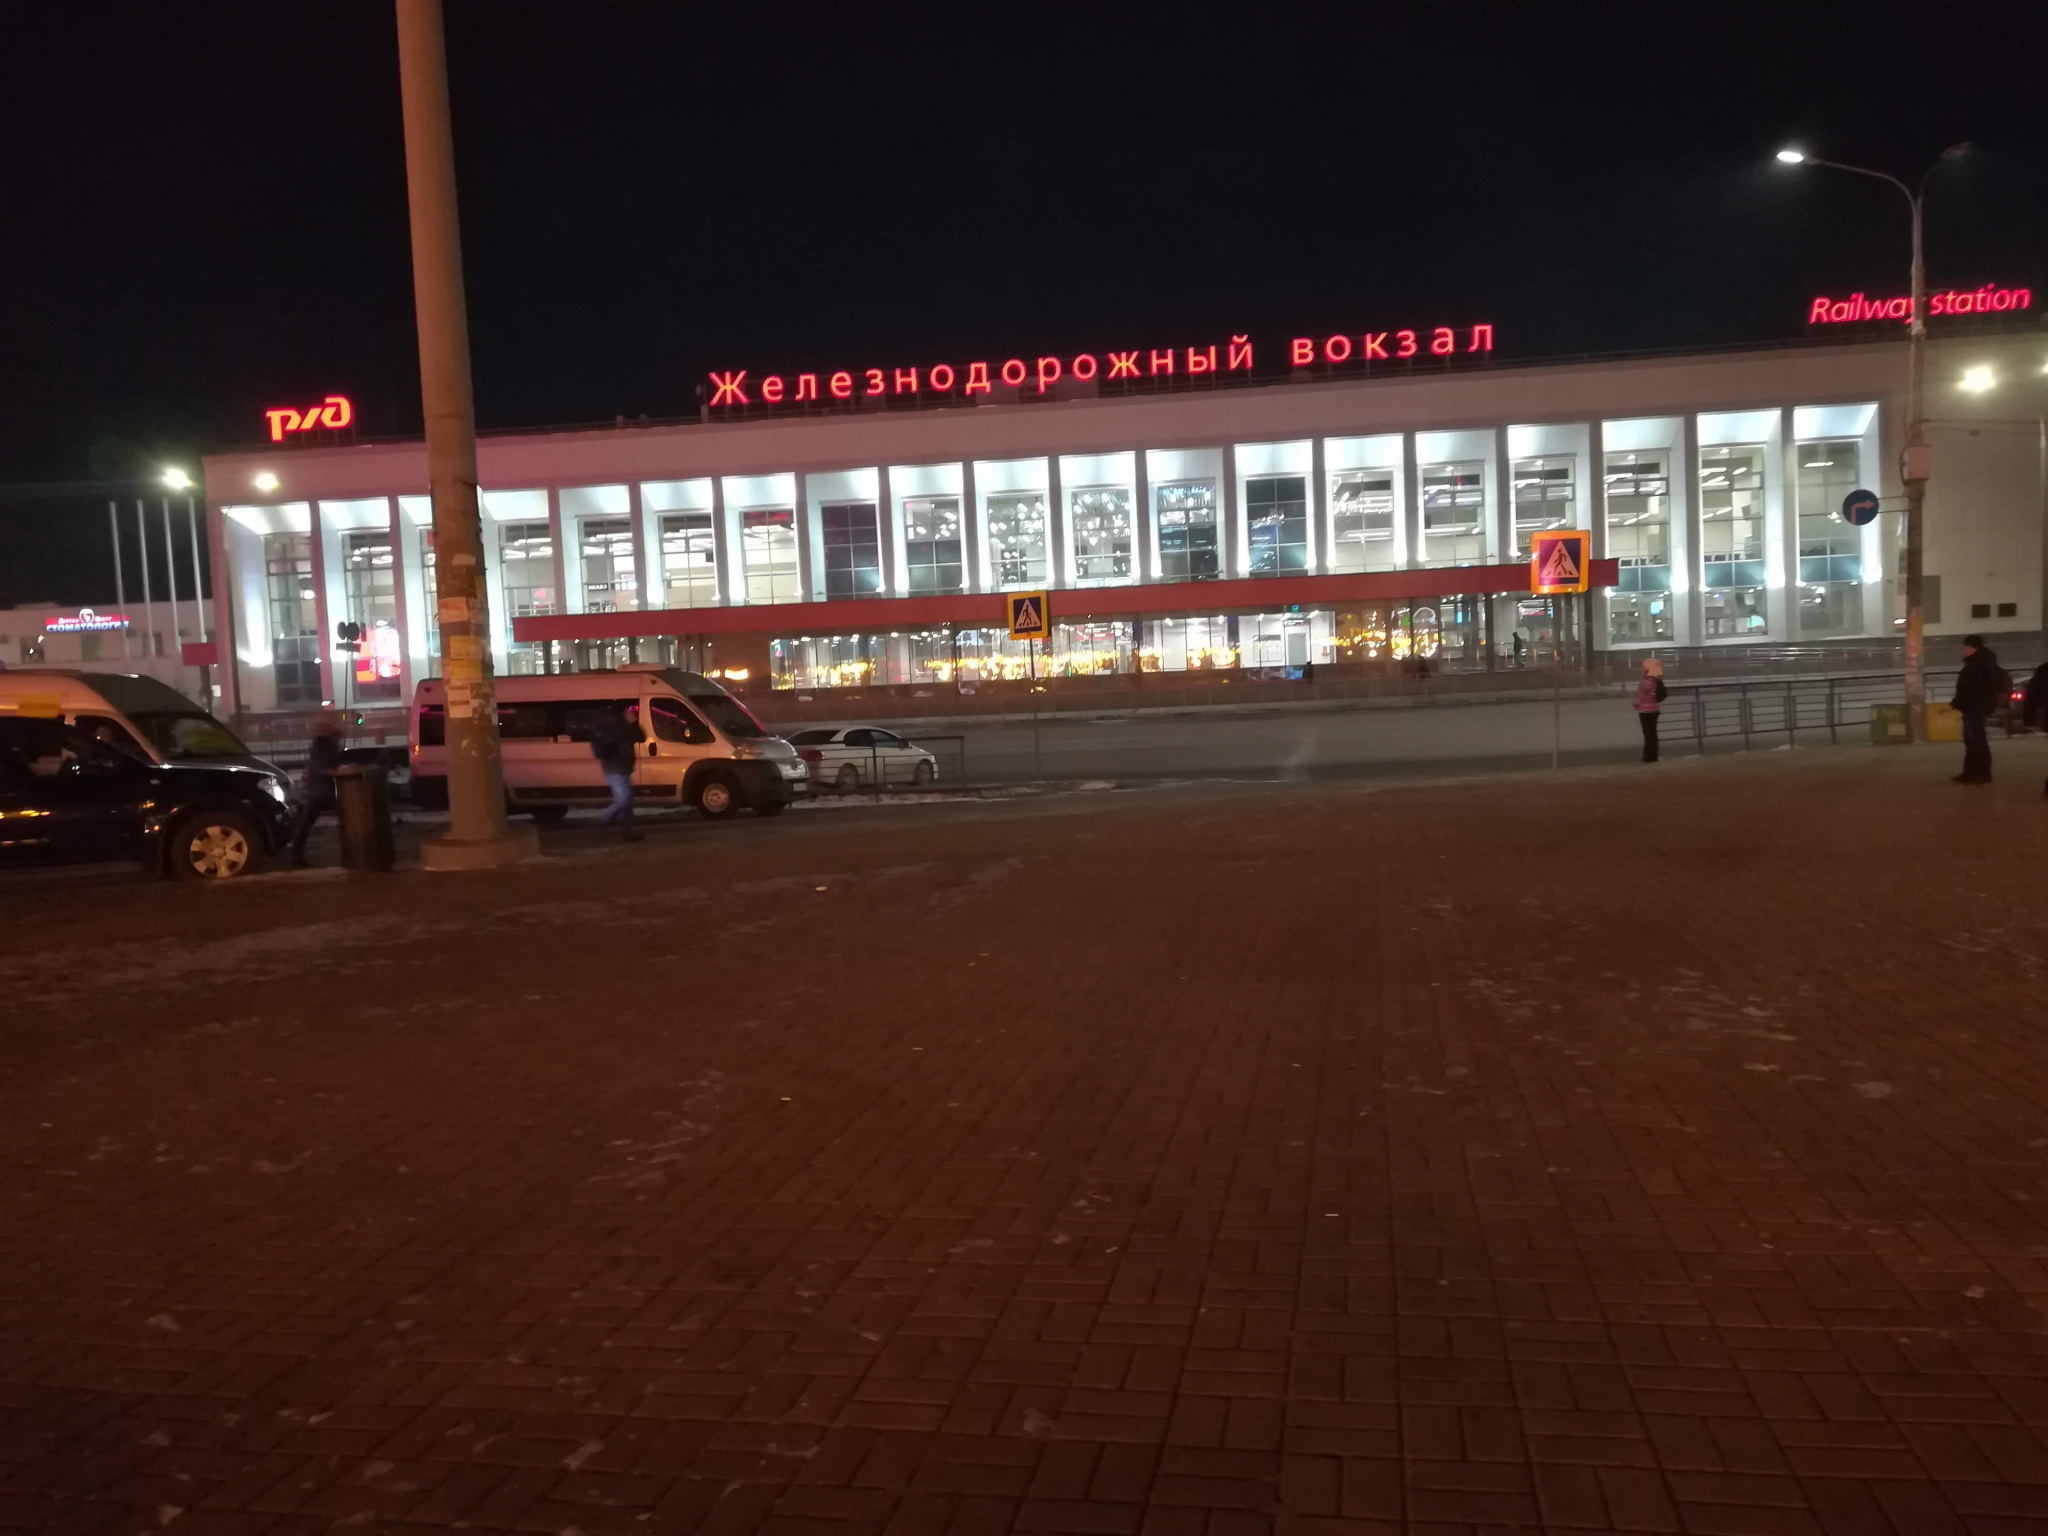 Московский вокзал в Нижнем Новгороде реконструируют для приема двухэтажных поездов